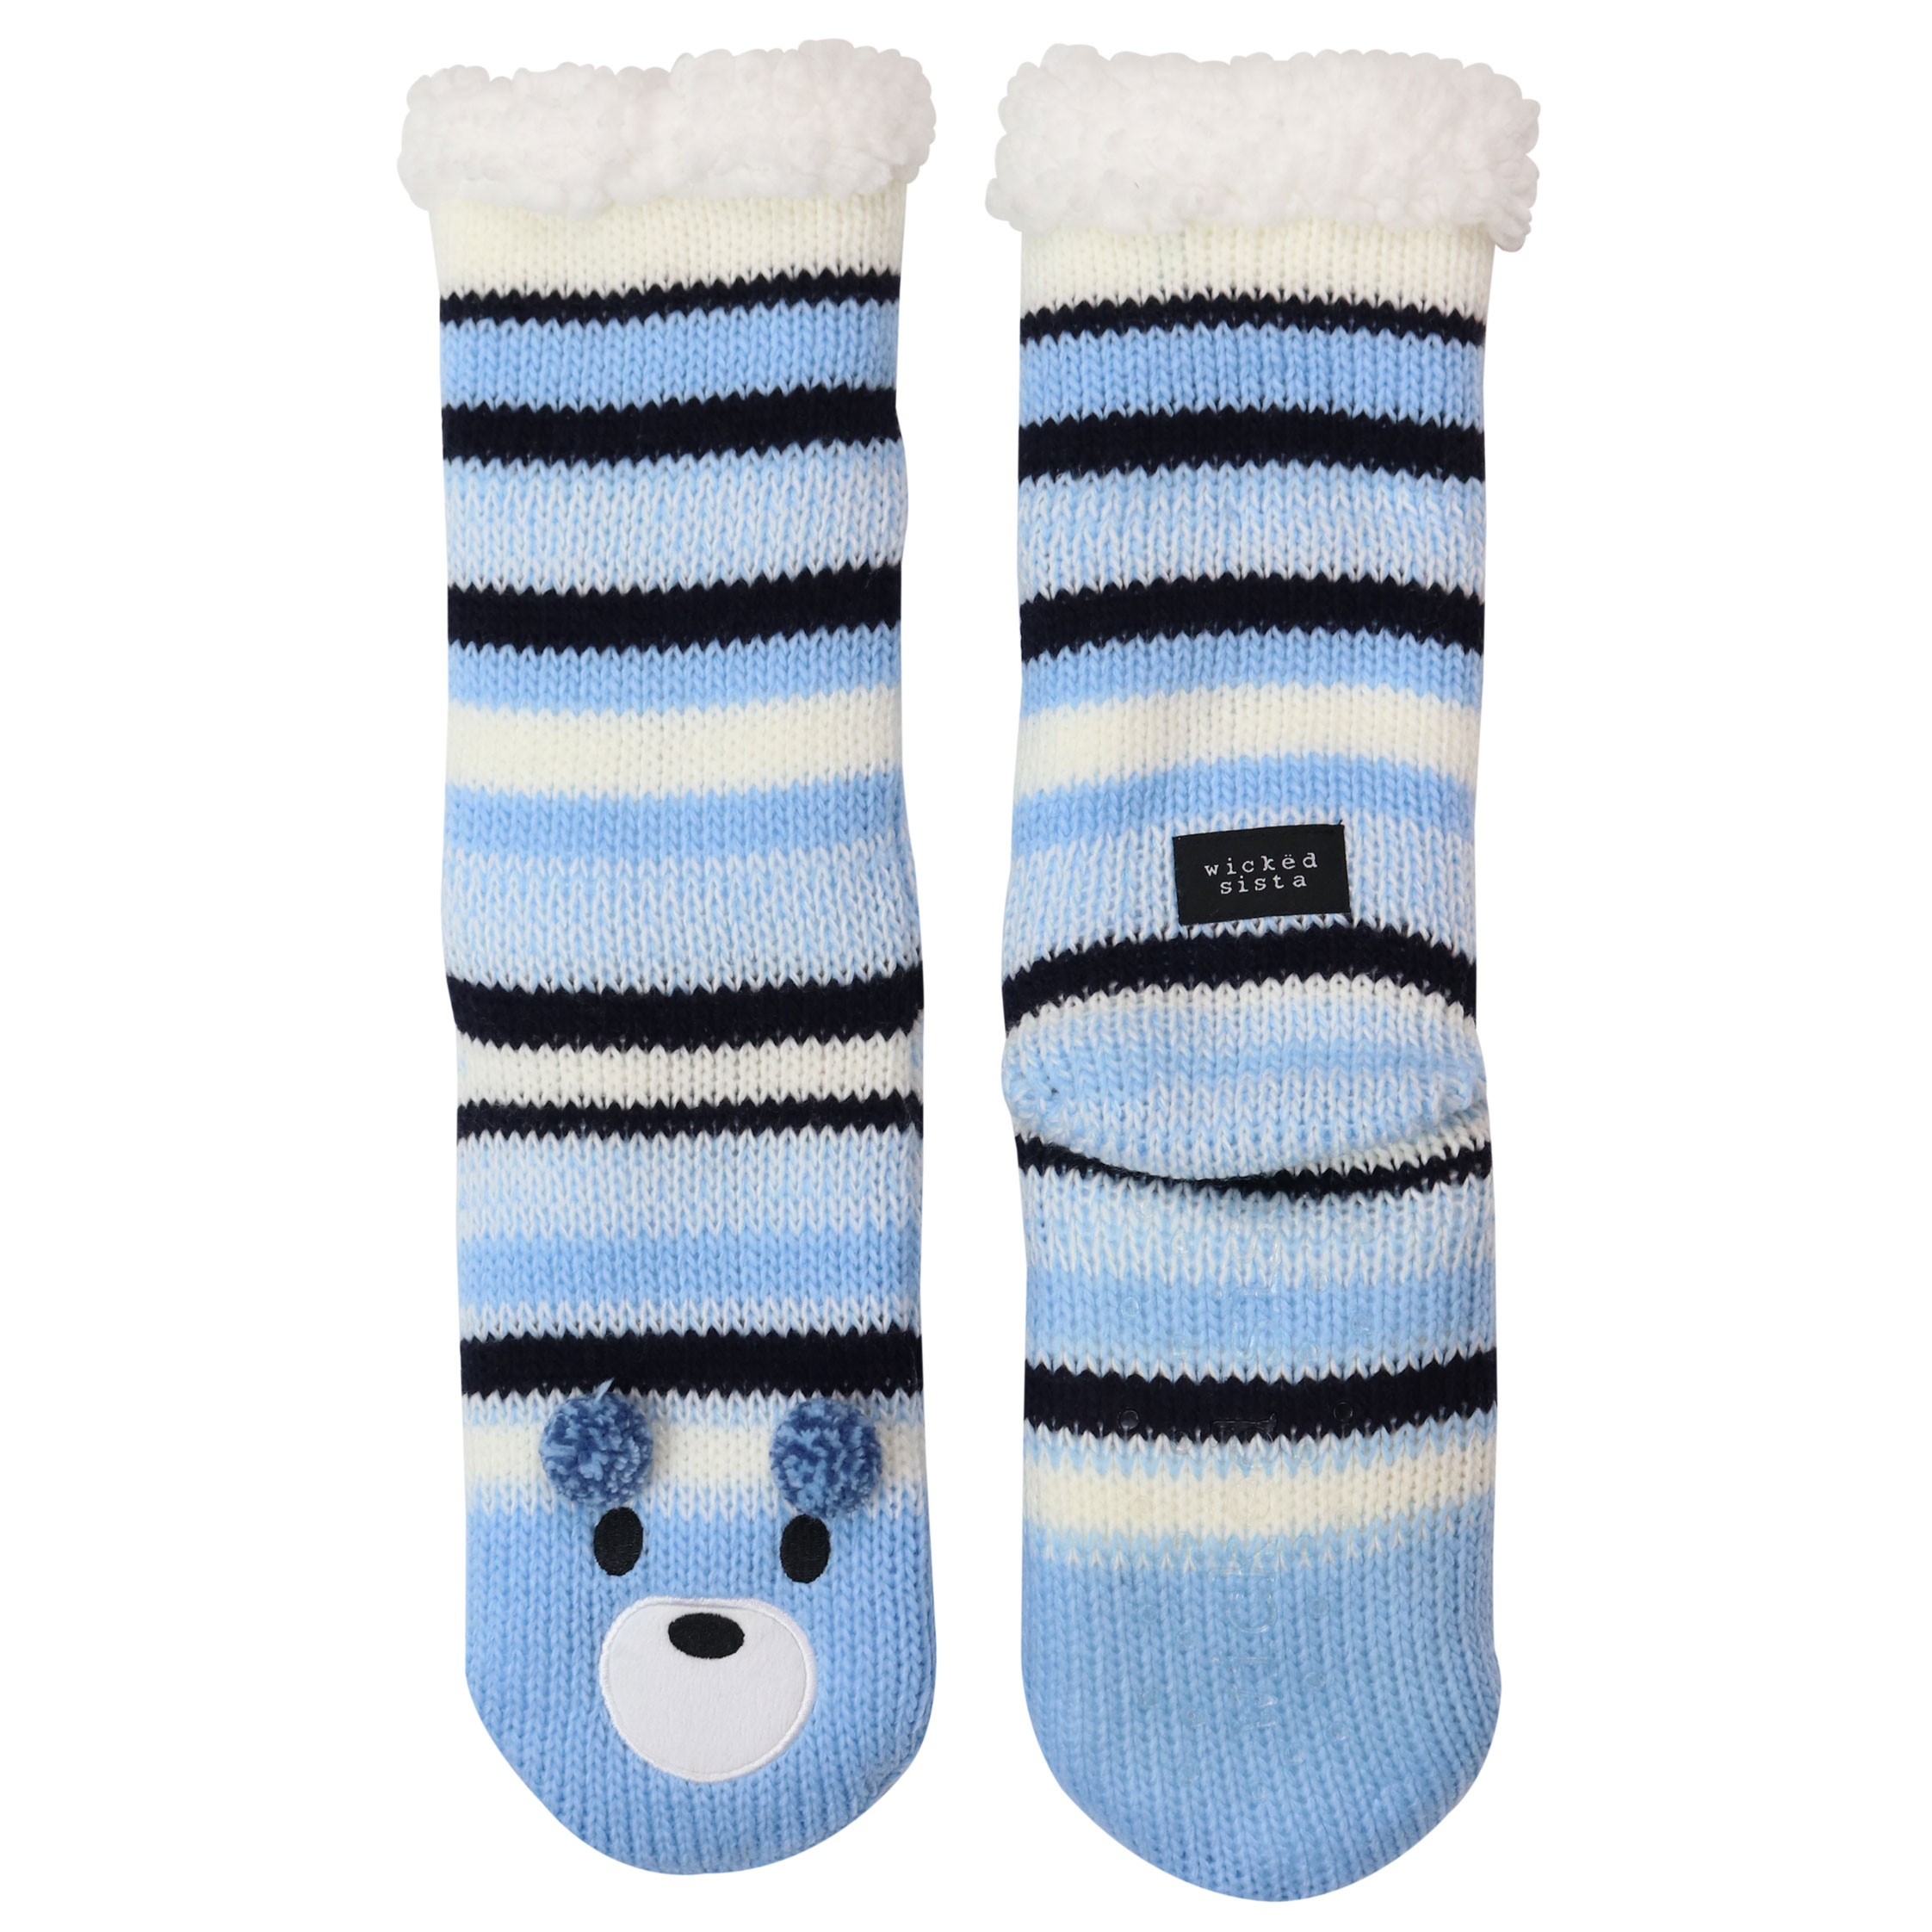 Bear stripe slipper socks - Wicked Sista | Cosmetic Bags, Jewellery ...